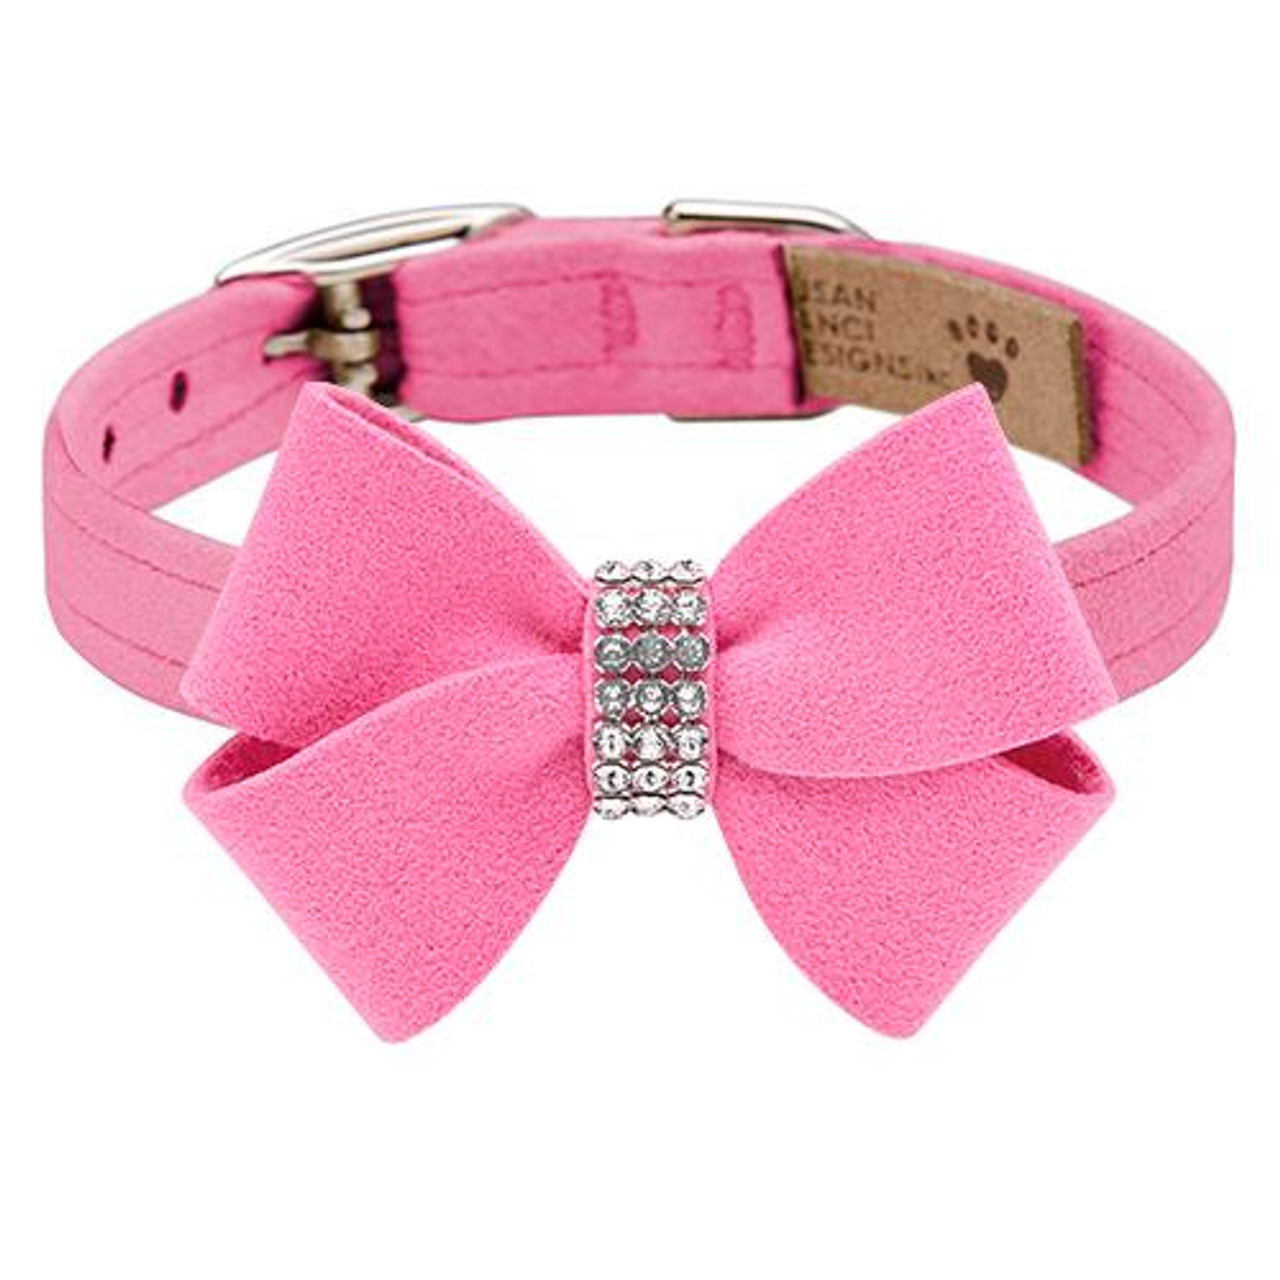 Susan Lanci Designs Perfect Pink Collar